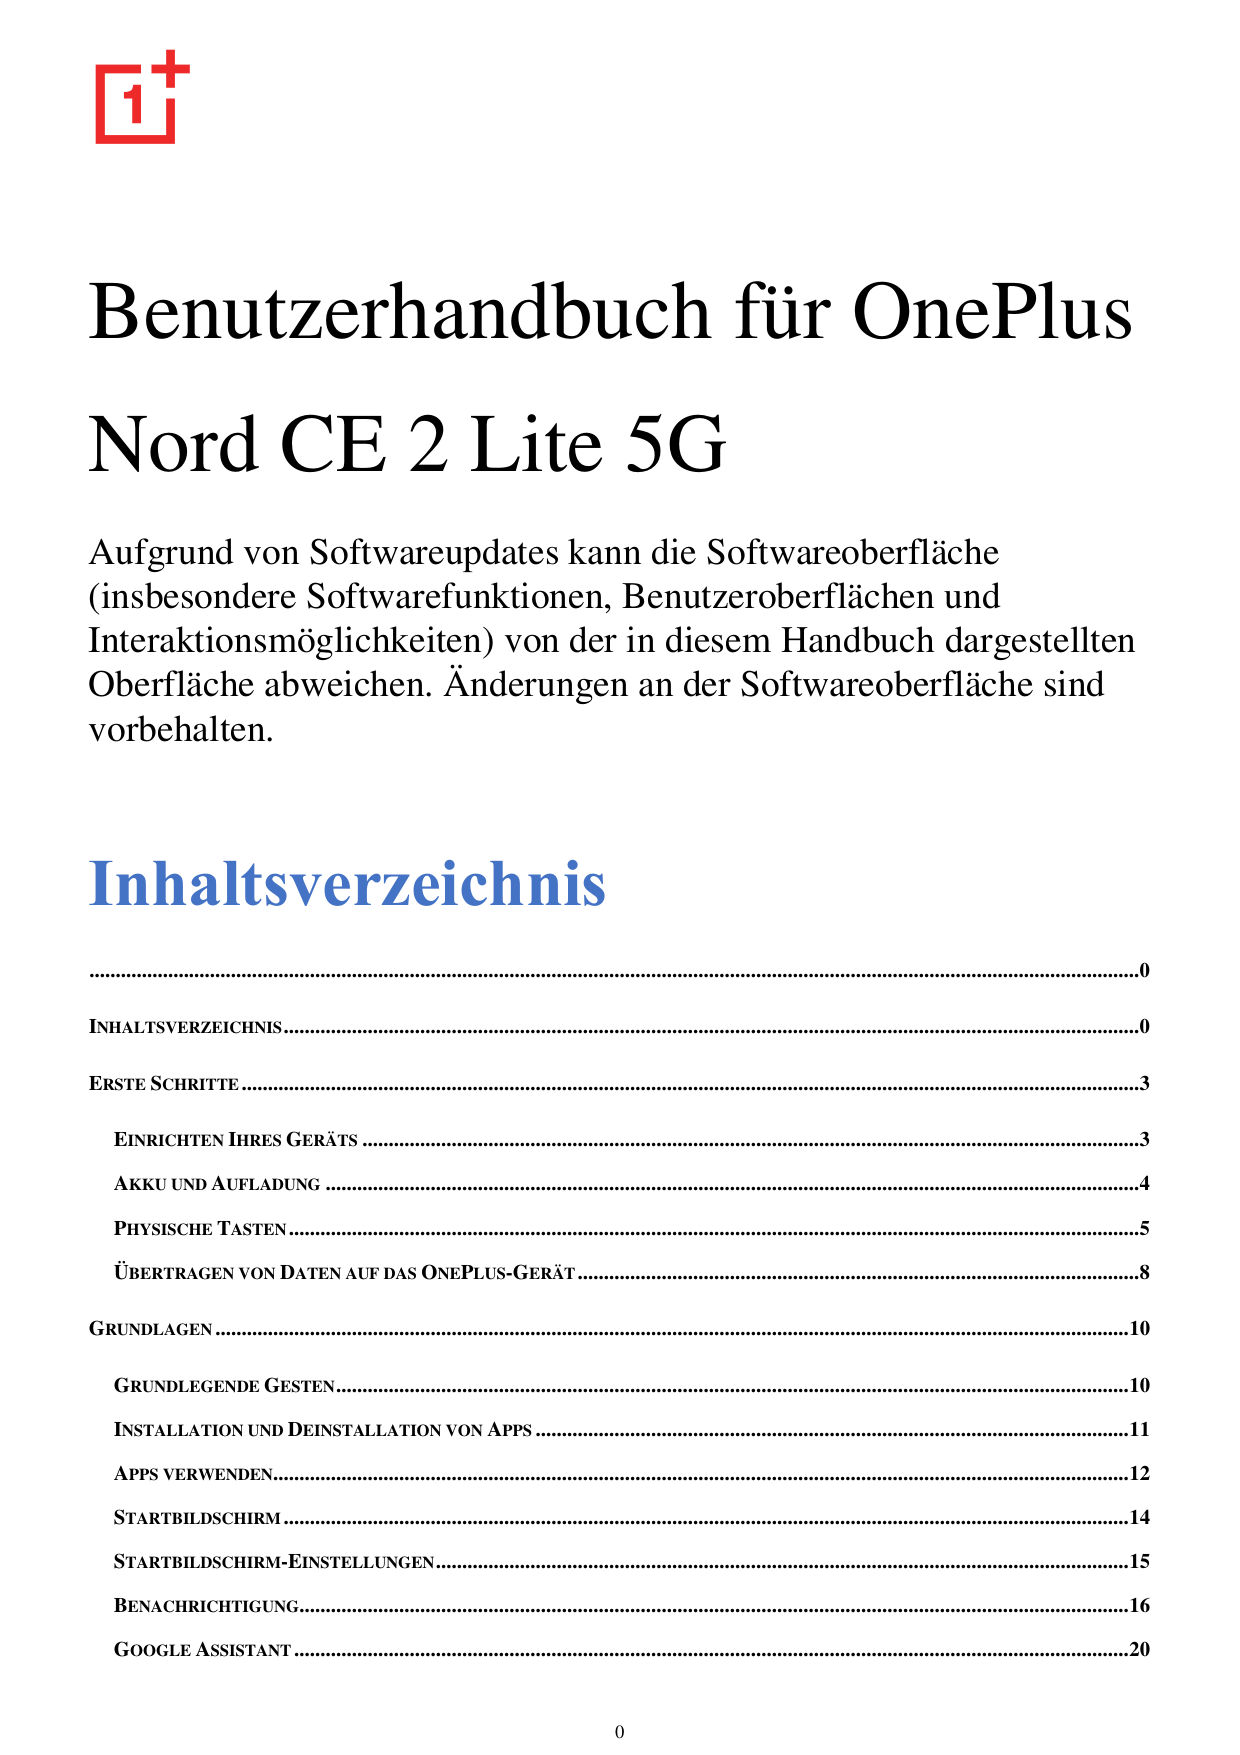 Benutzerhandbuch für OnePlusNord CE 2 Lite 5GAufgrund von Softwareupdates kann die Softwareoberfläche(insbesondere Softwarefunkt